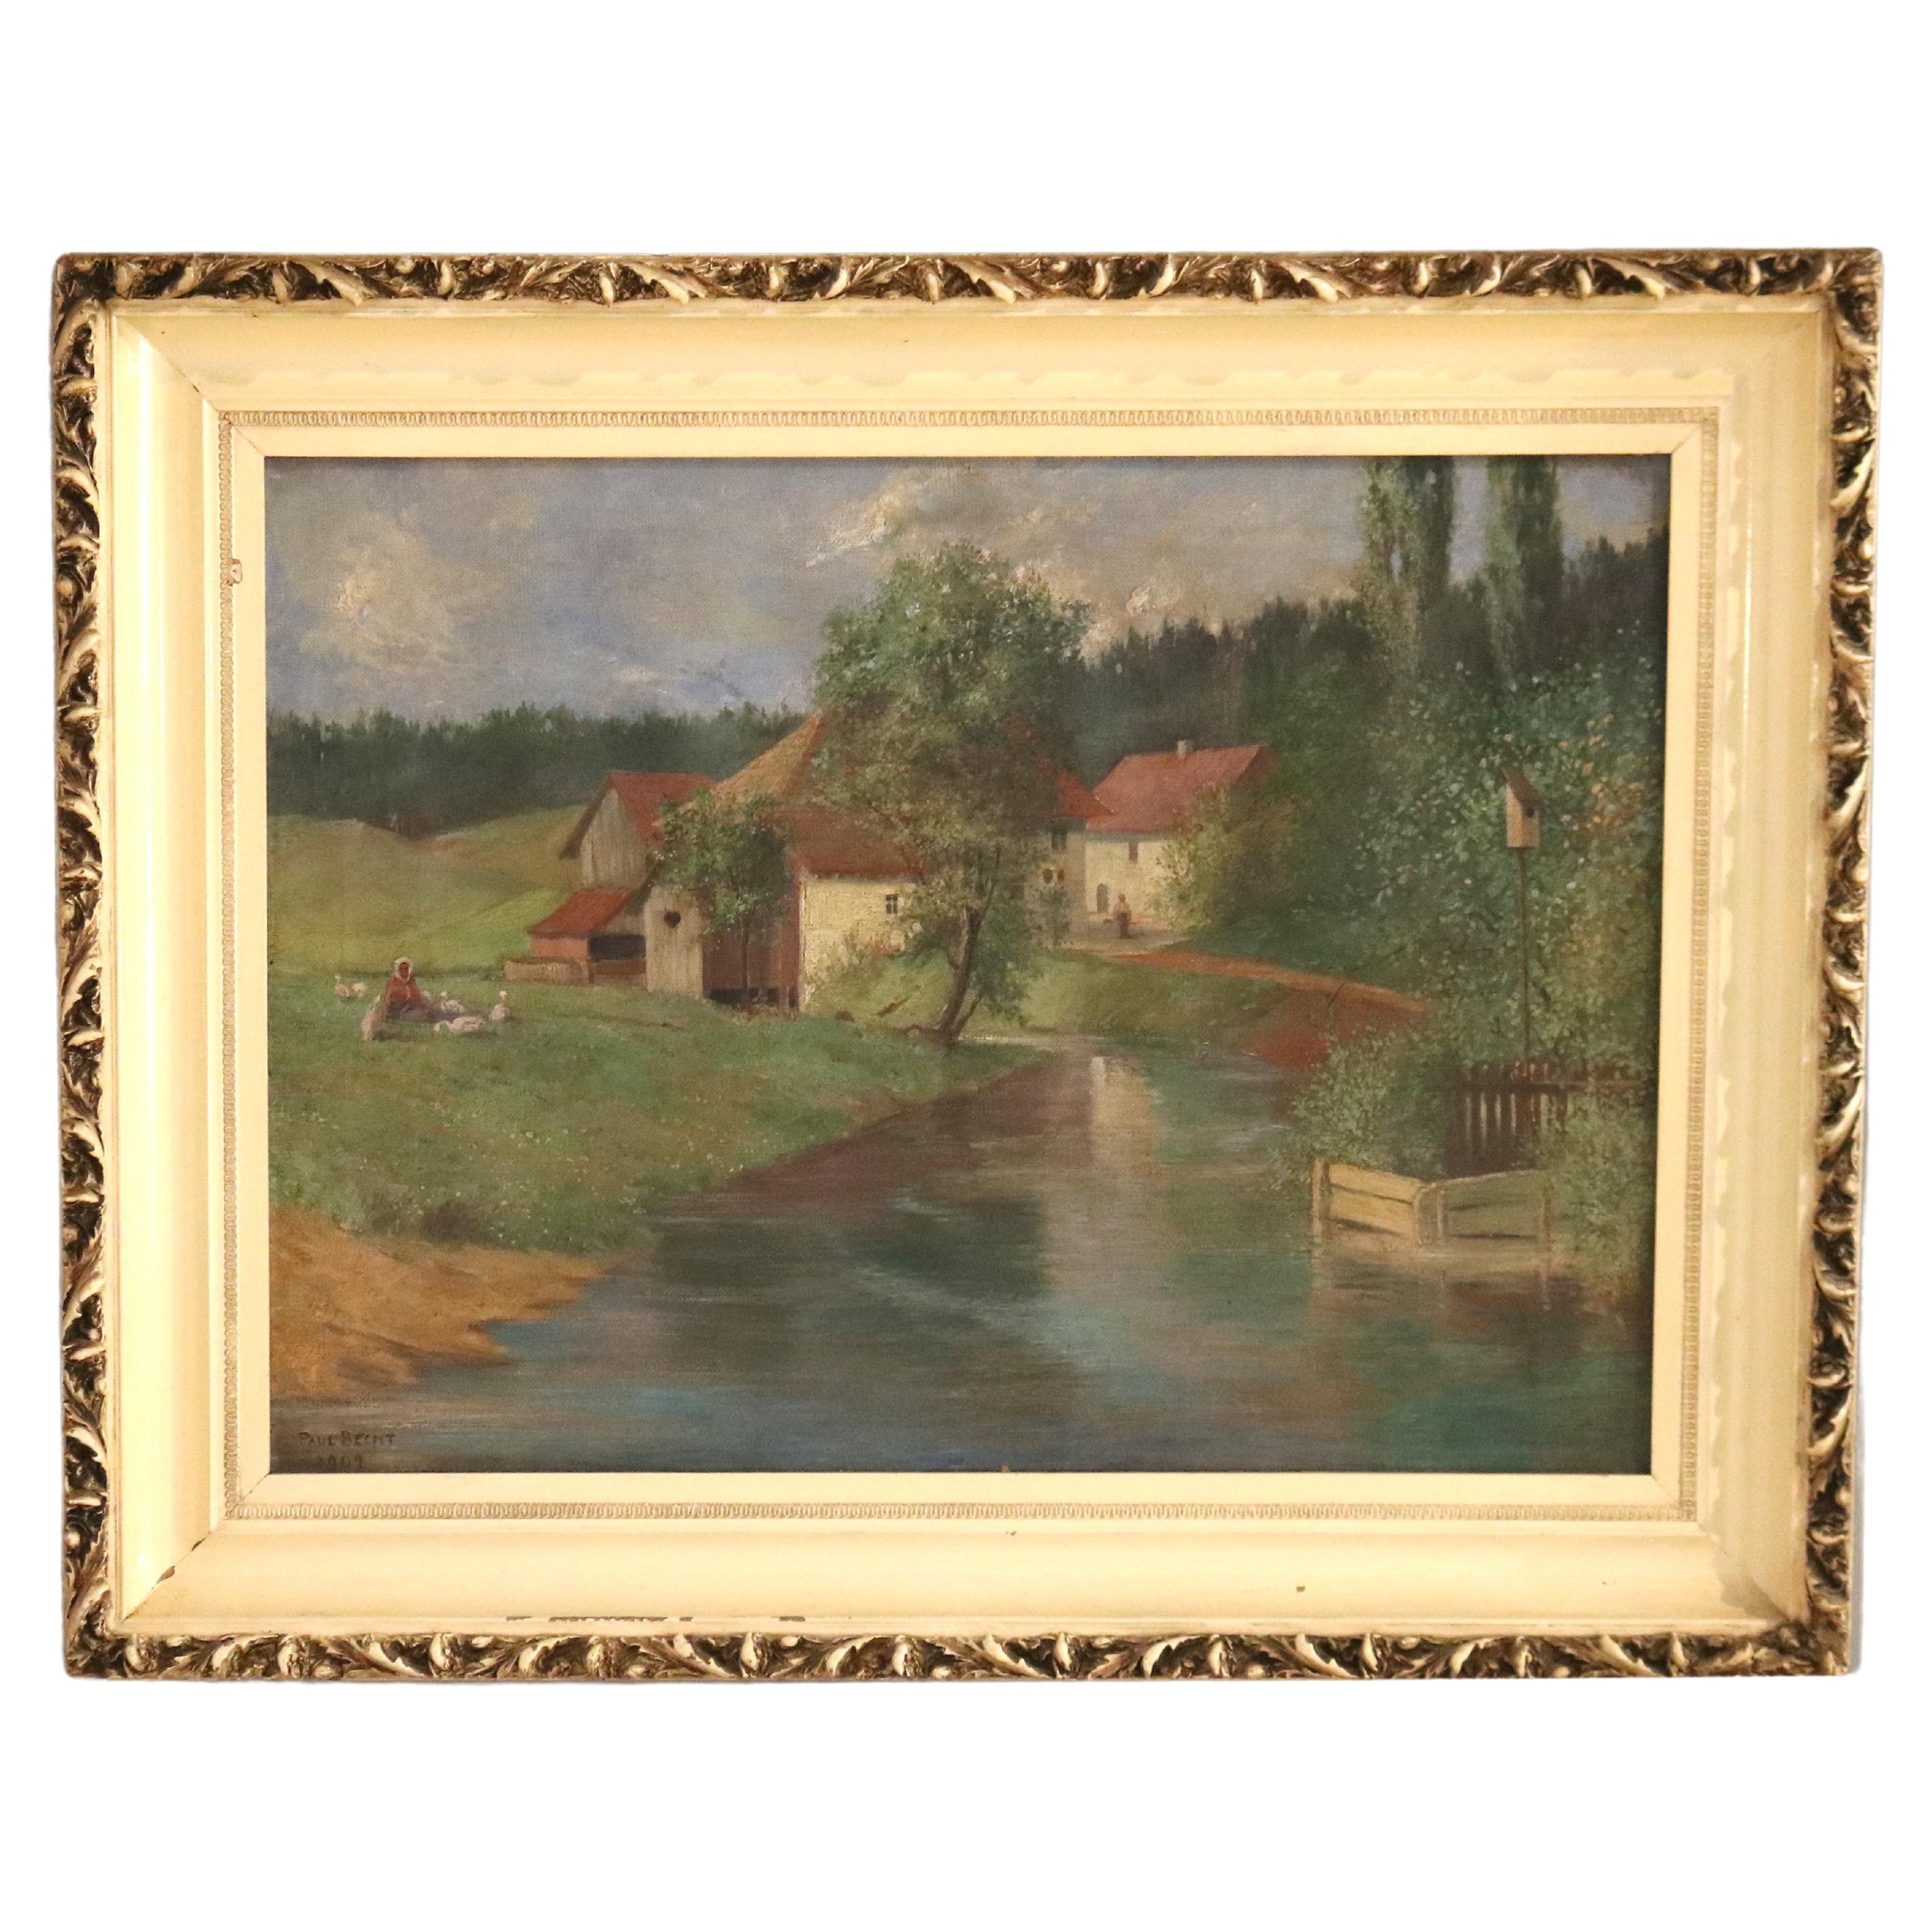 Antikes Landschaftsgemälde, Öl auf Leinwand, Landschaftsgemälde, Bauernssszene, signiert Brecht, 1907